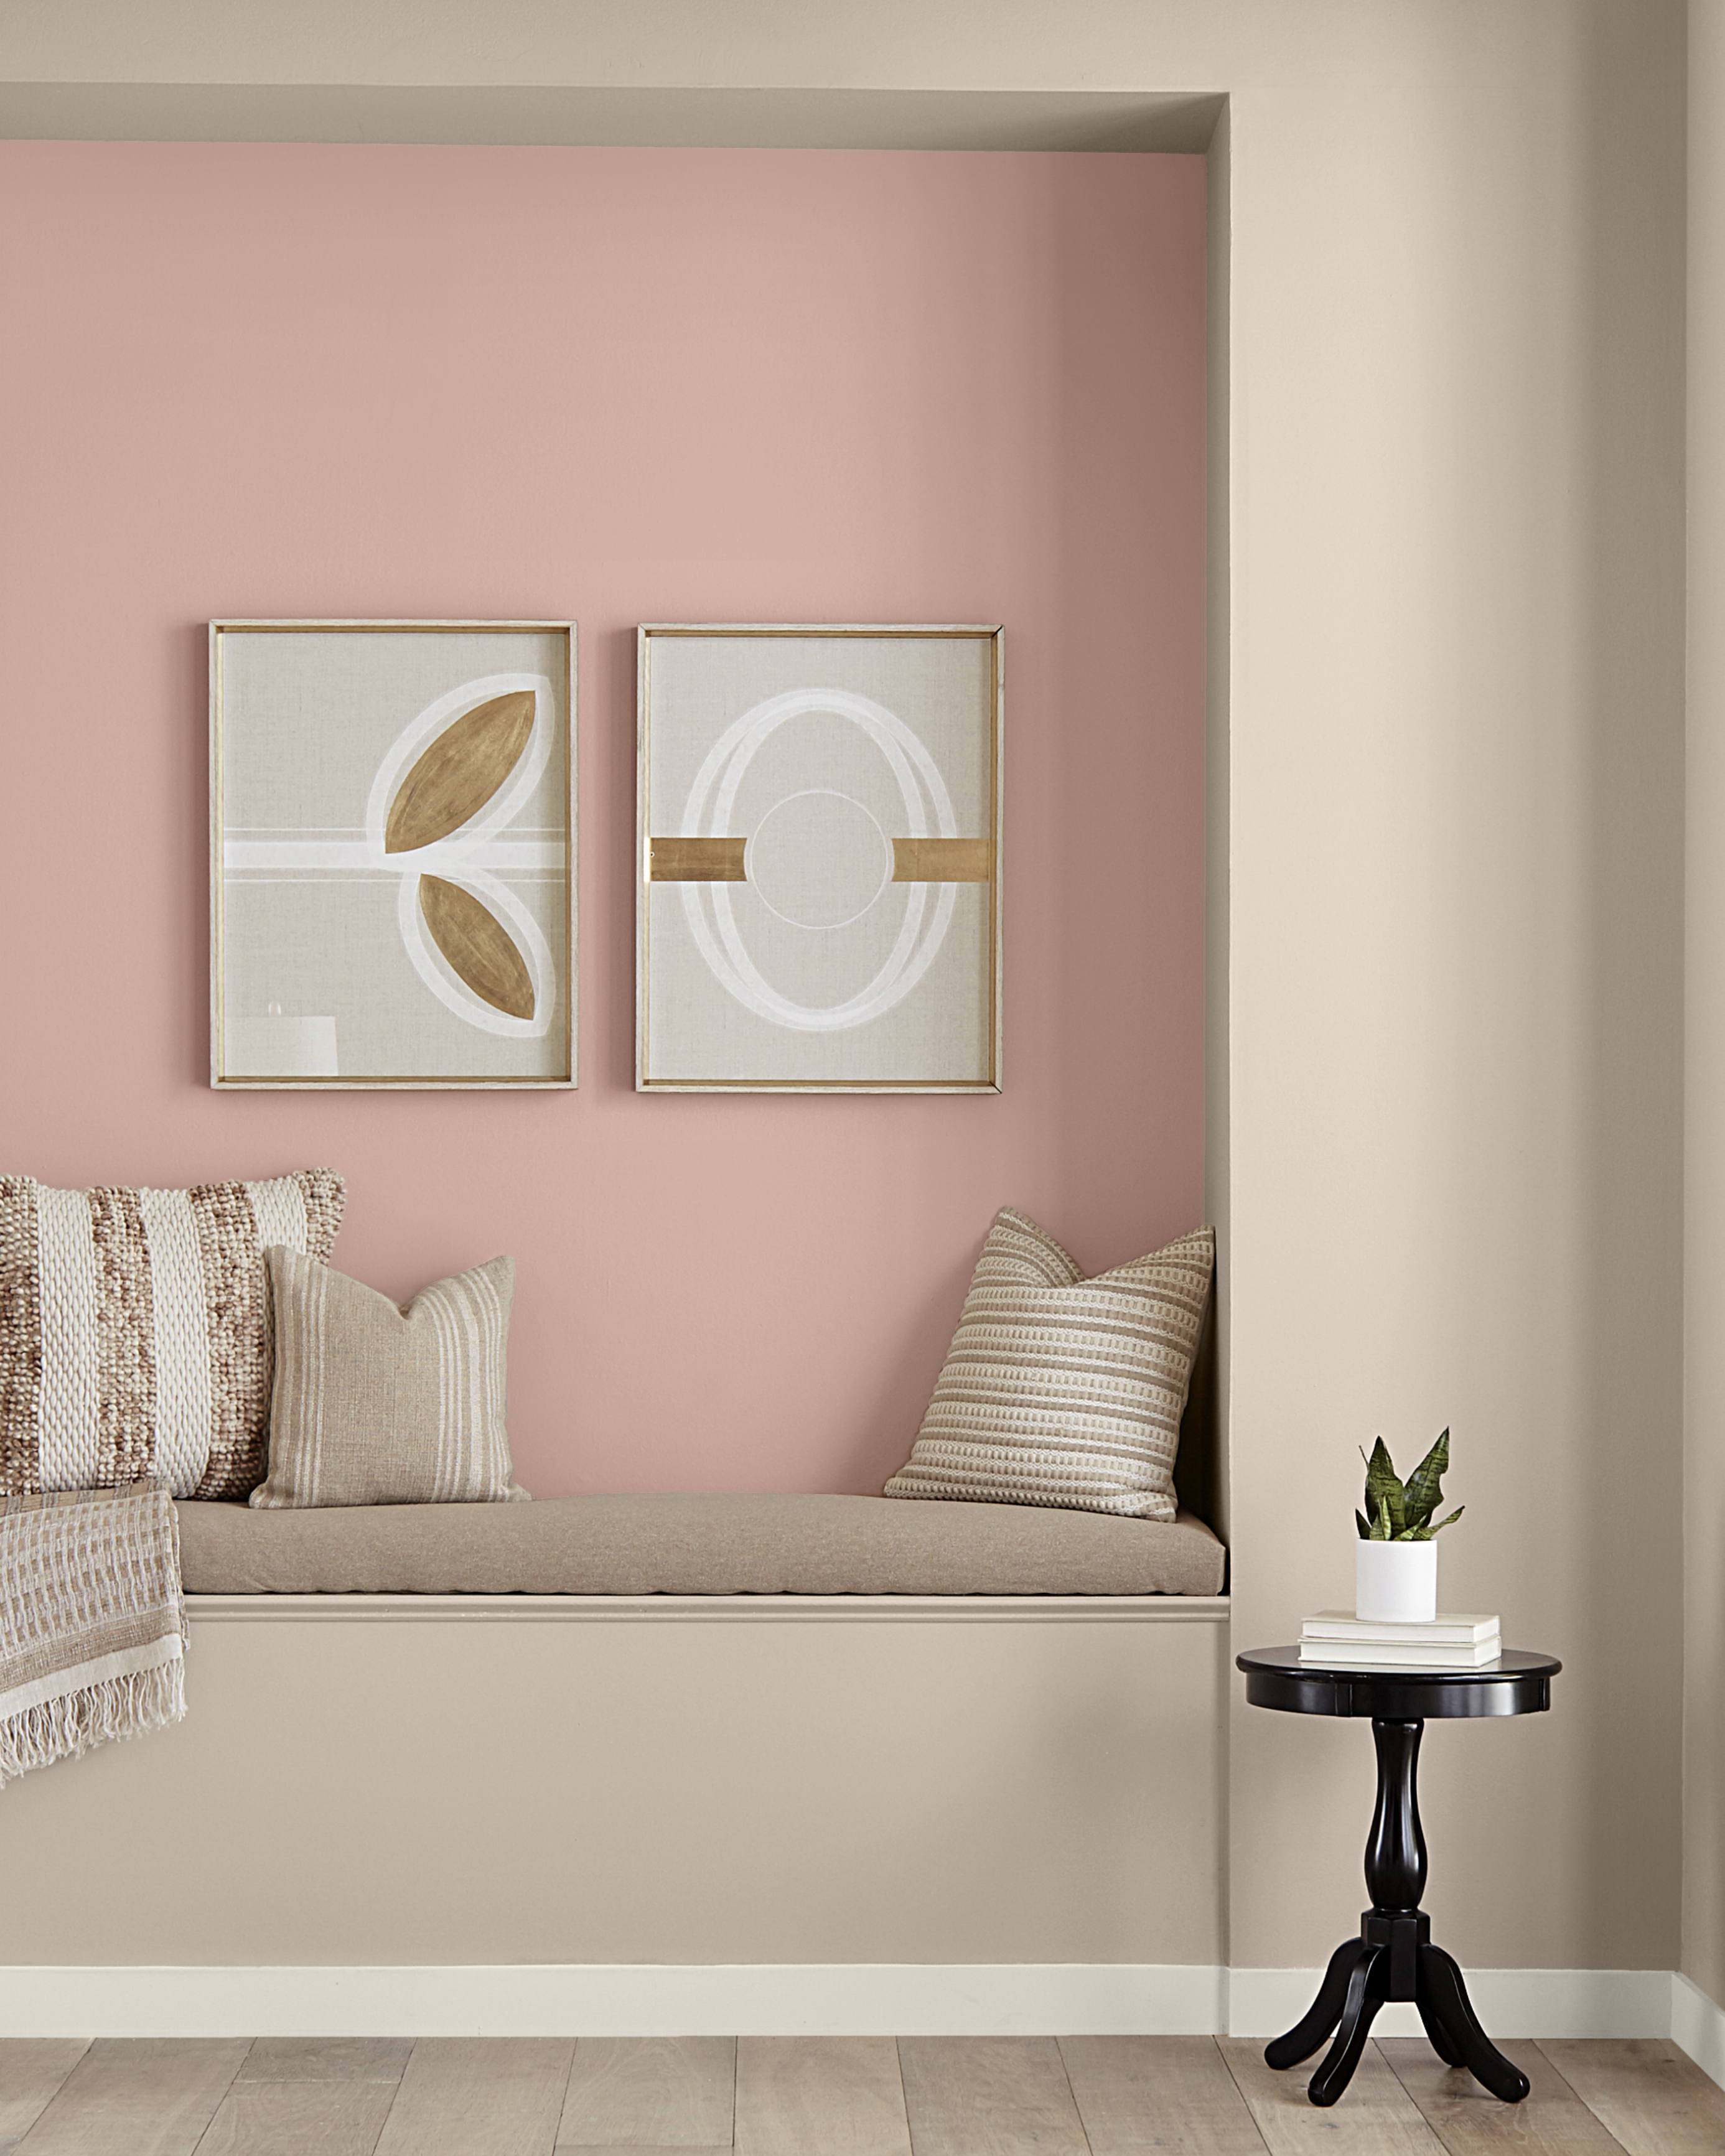 Un coin lecture dans le couloir avec mur de teinte rosée. Le mur d'accent est muni de deux affiches décoratives. La banquette présente des tons neutres.